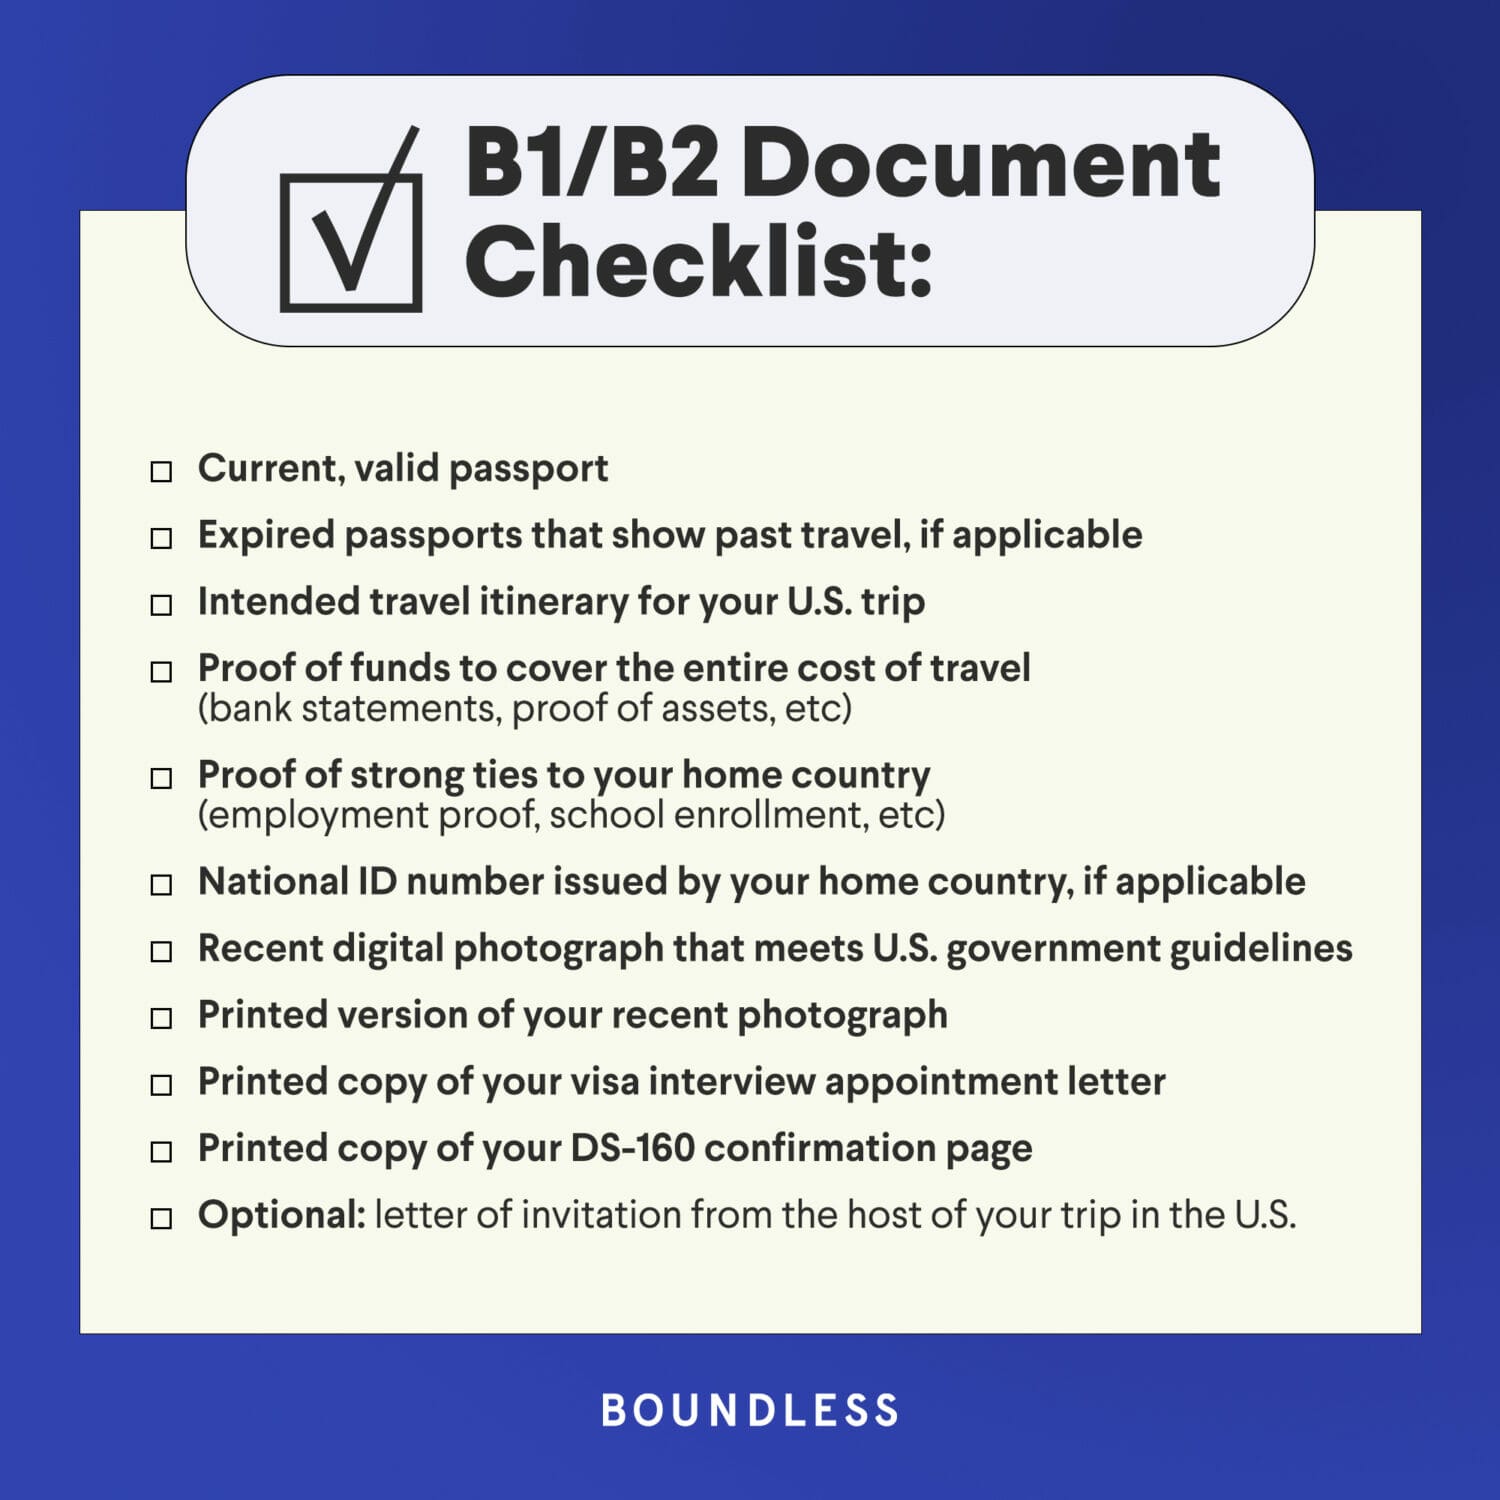 gov.uk tourist visa checklist